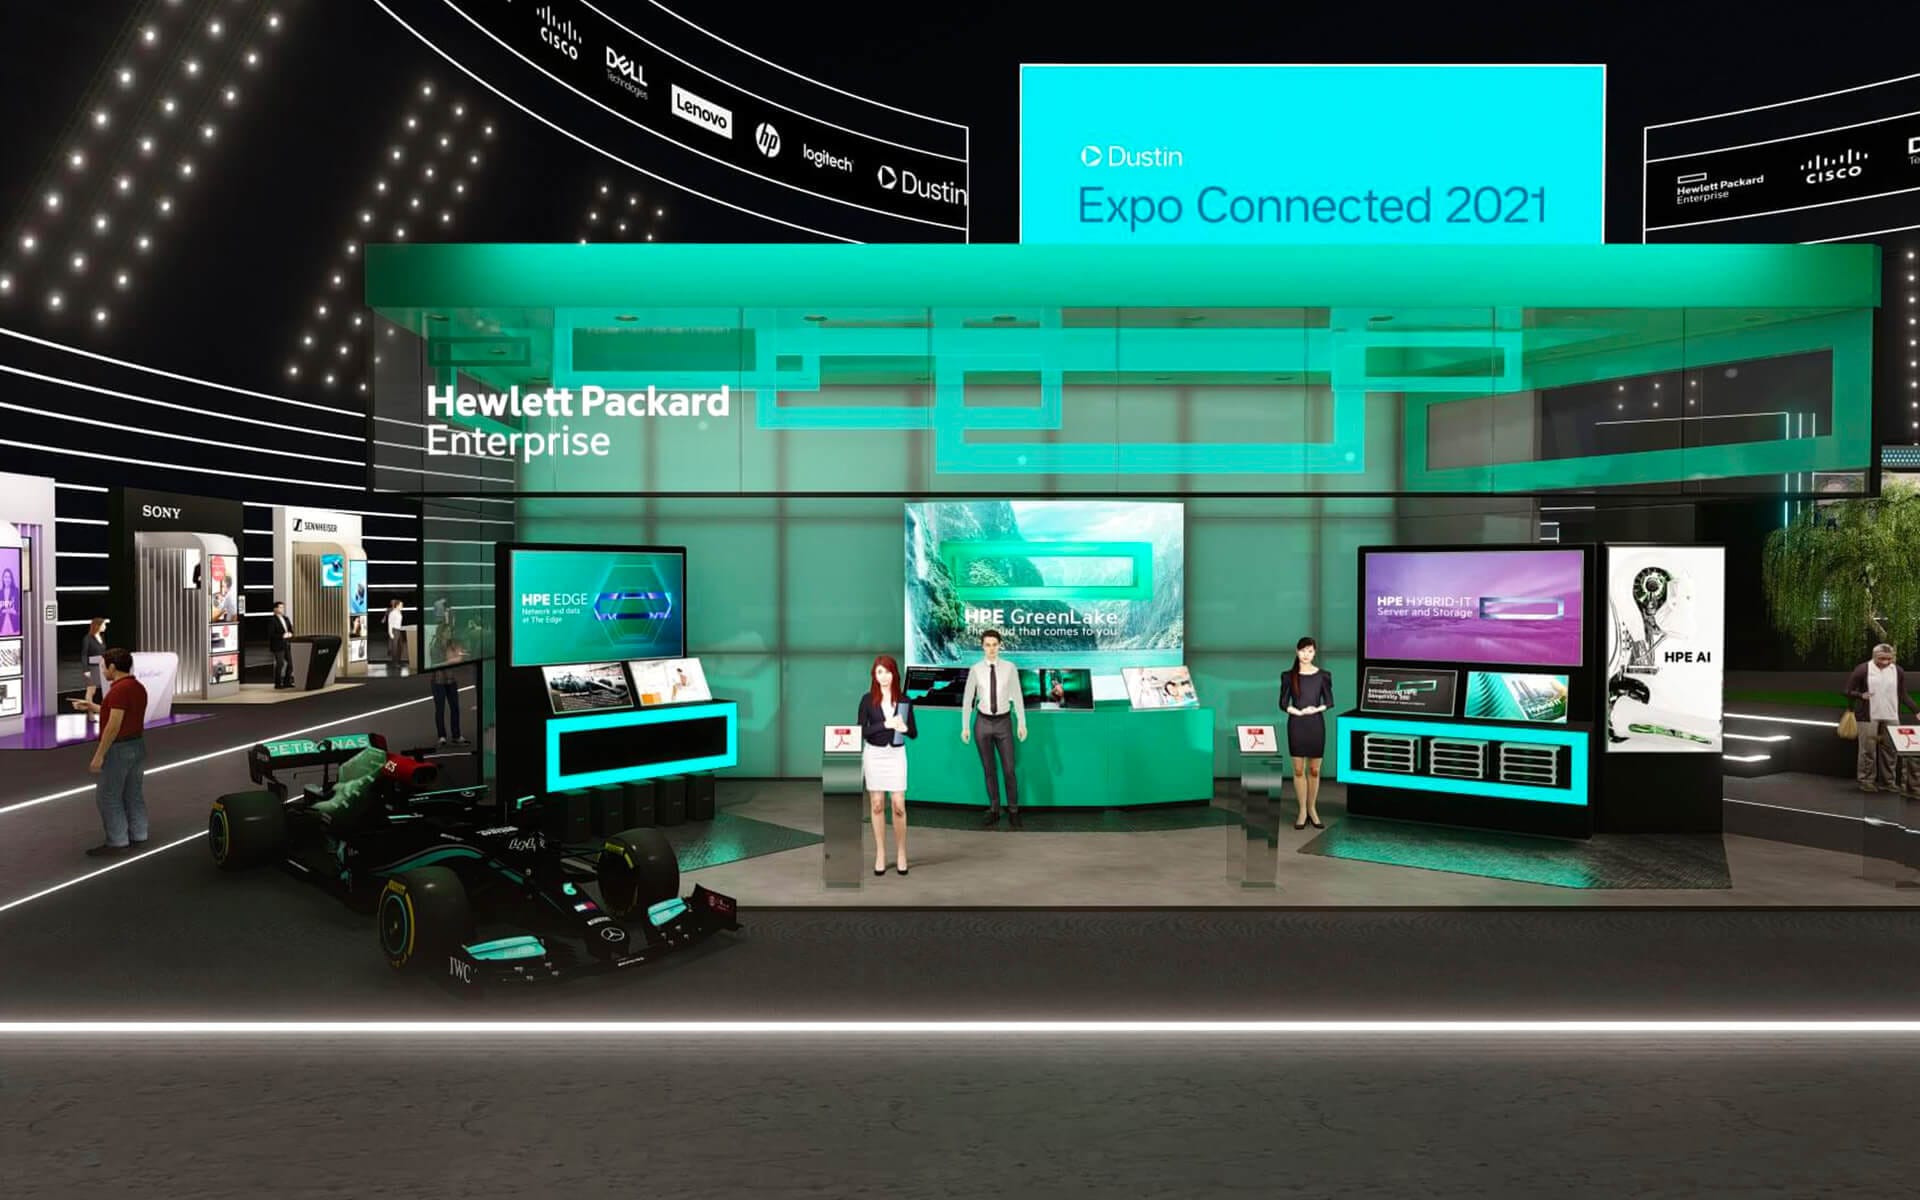 Virtuellt mässmonter för HPE på det digitala eventet Dustin Expo Connected 2021